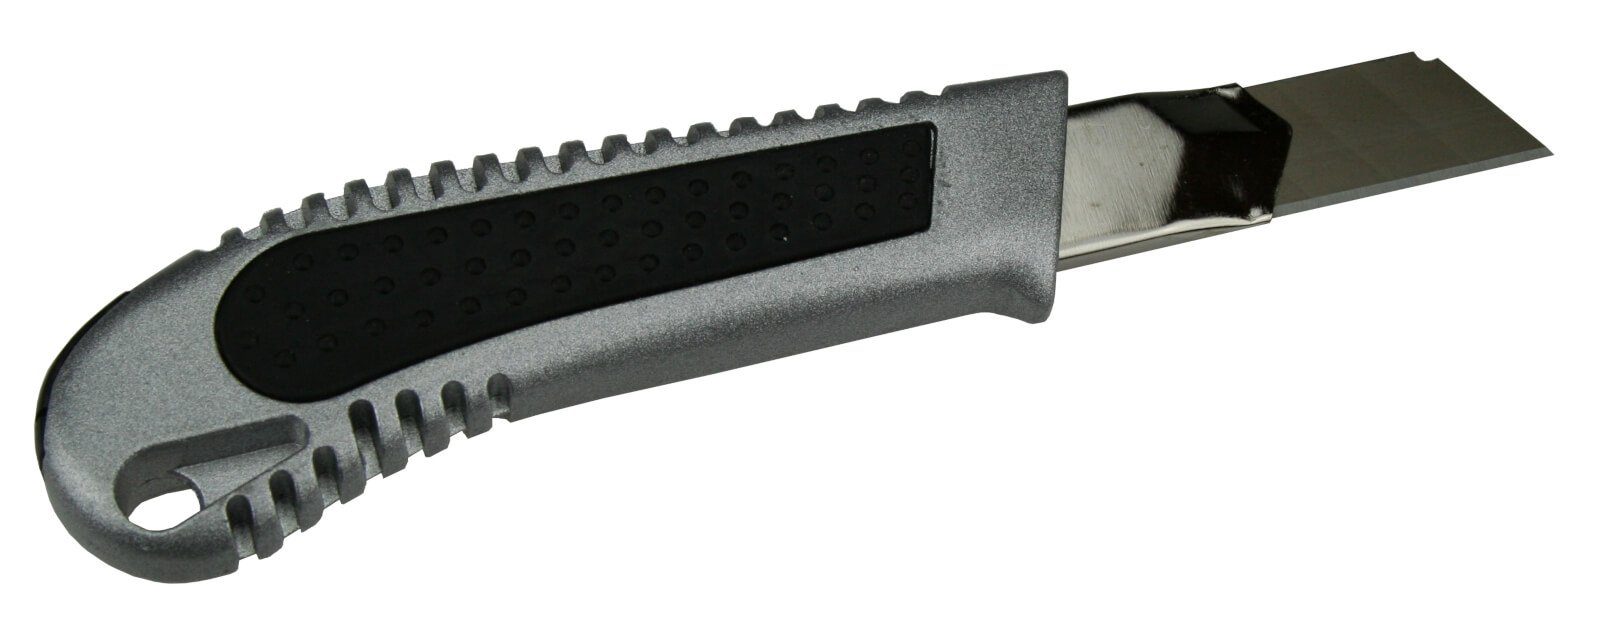 Abbrechklinge Profi Cuttermesser Cuttermesser ChiliTec Alu 18mm